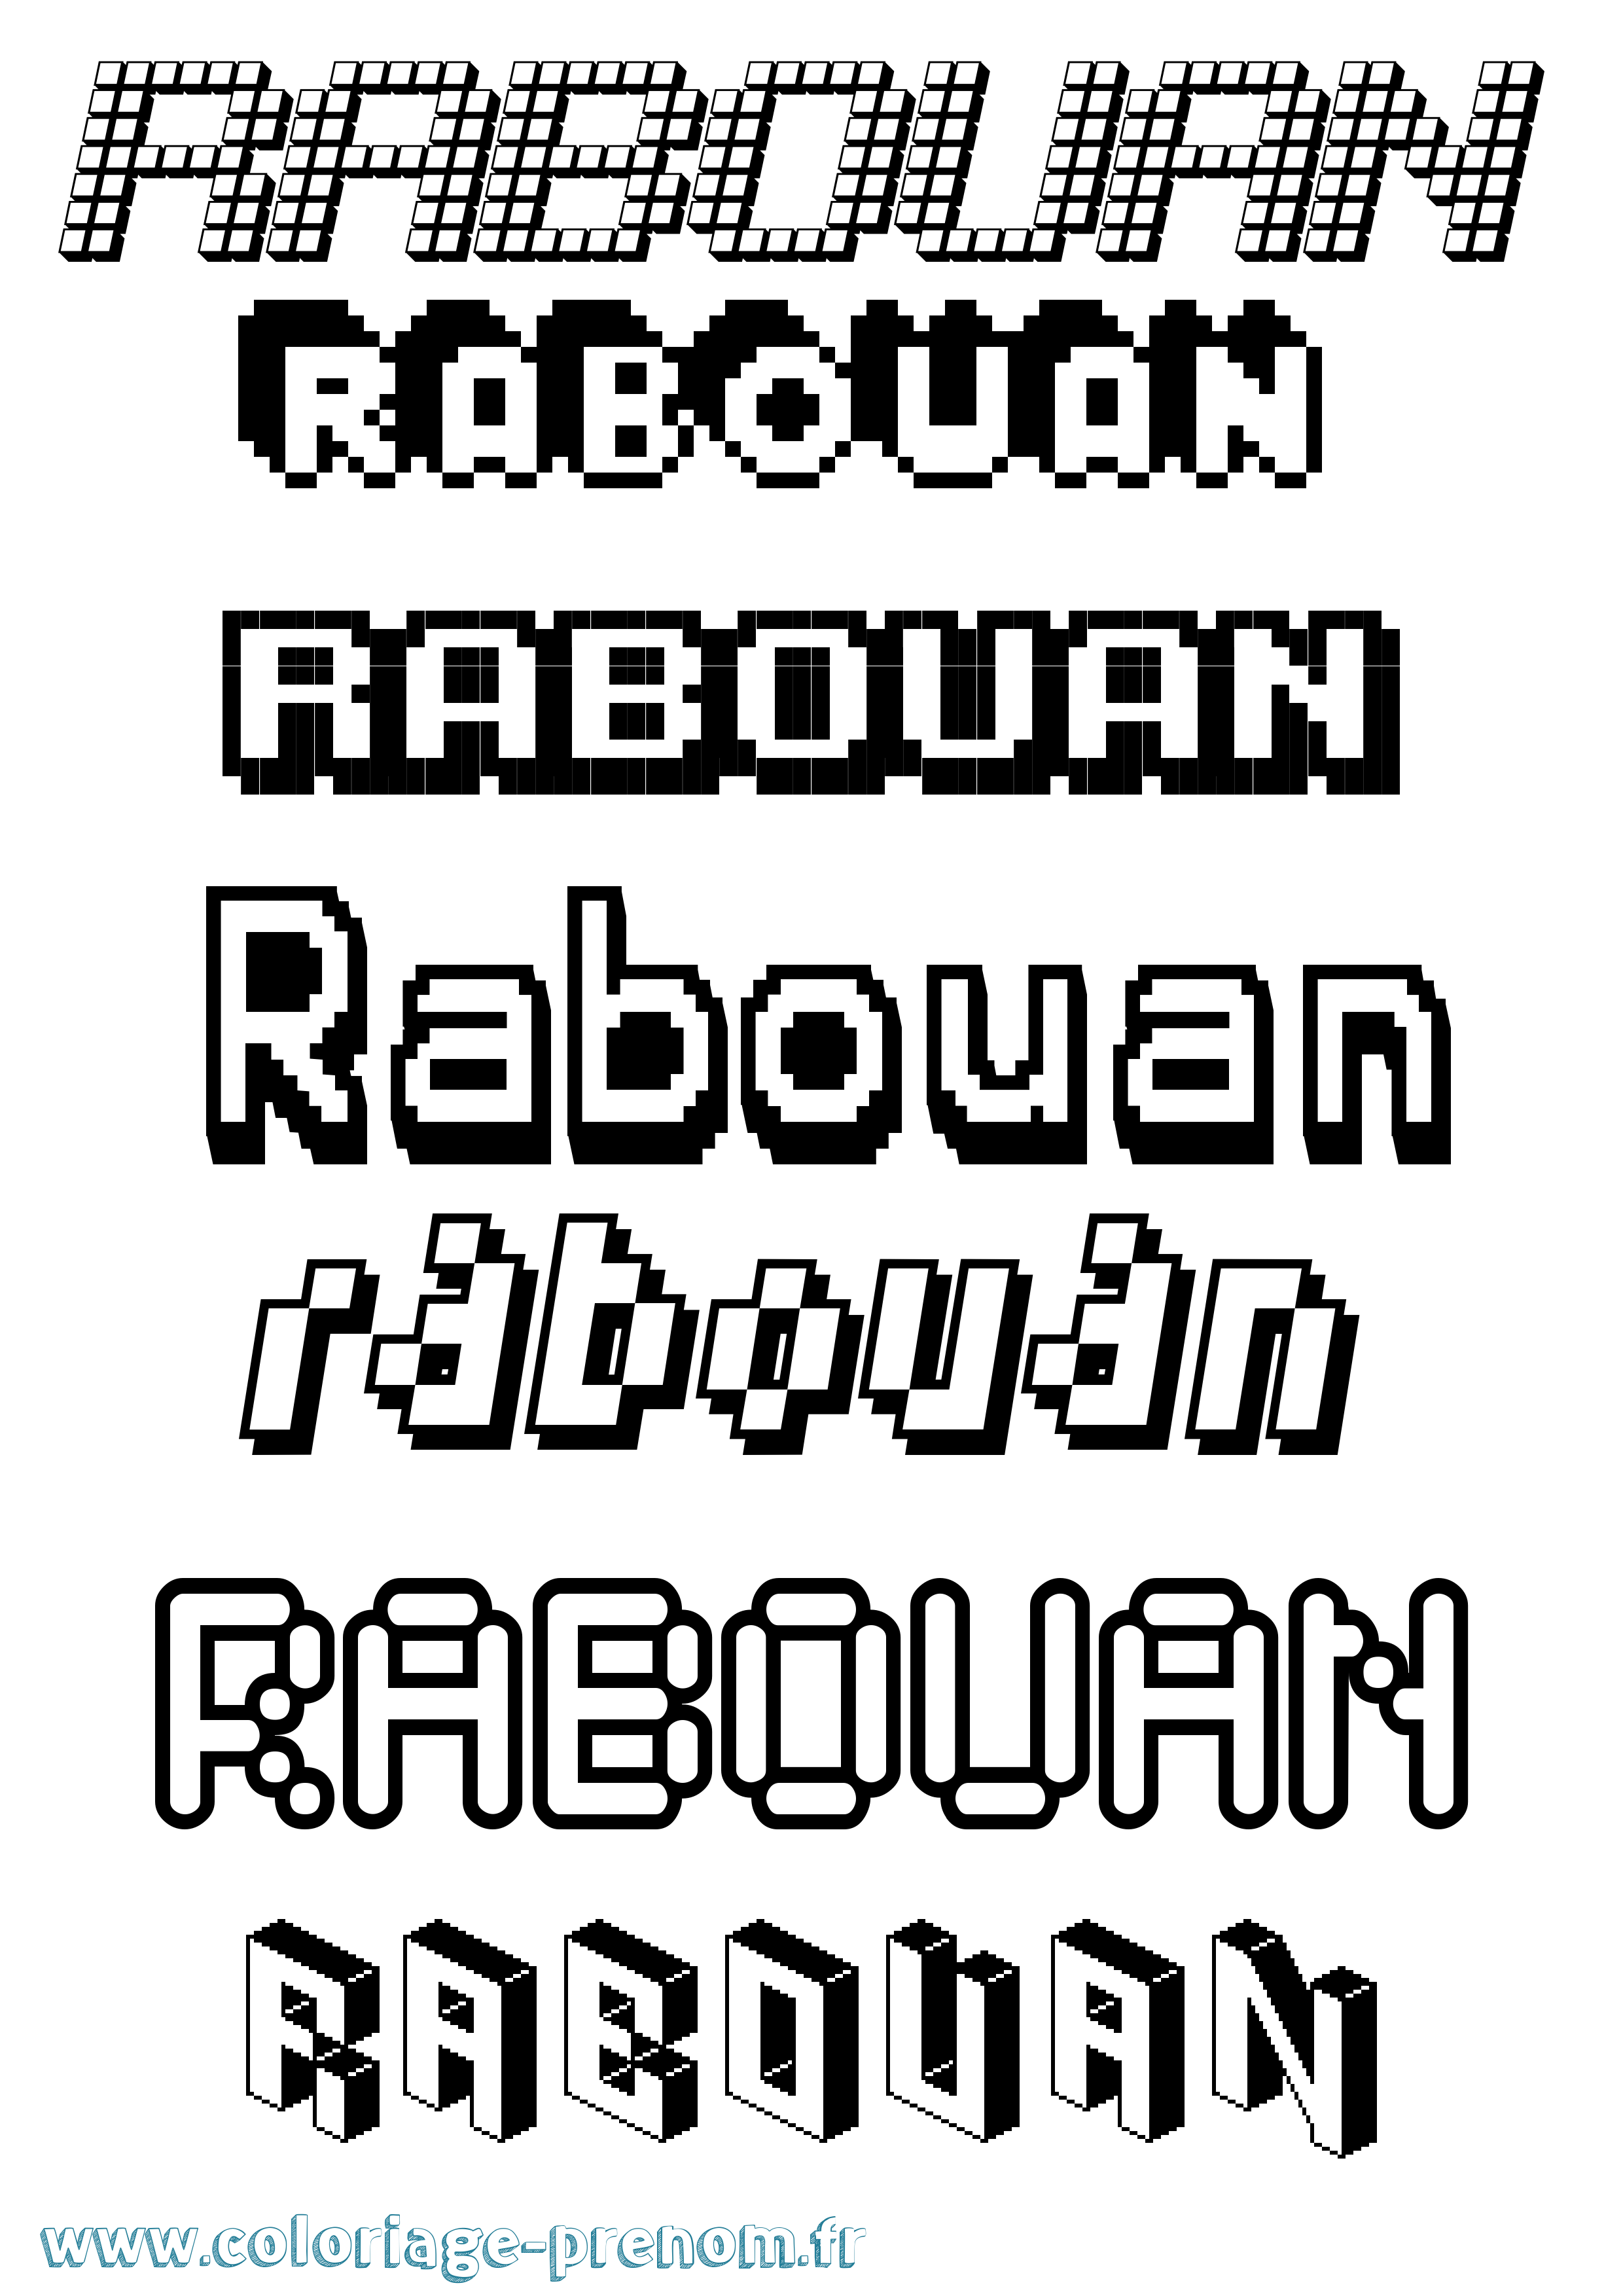 Coloriage prénom Rabouan Pixel